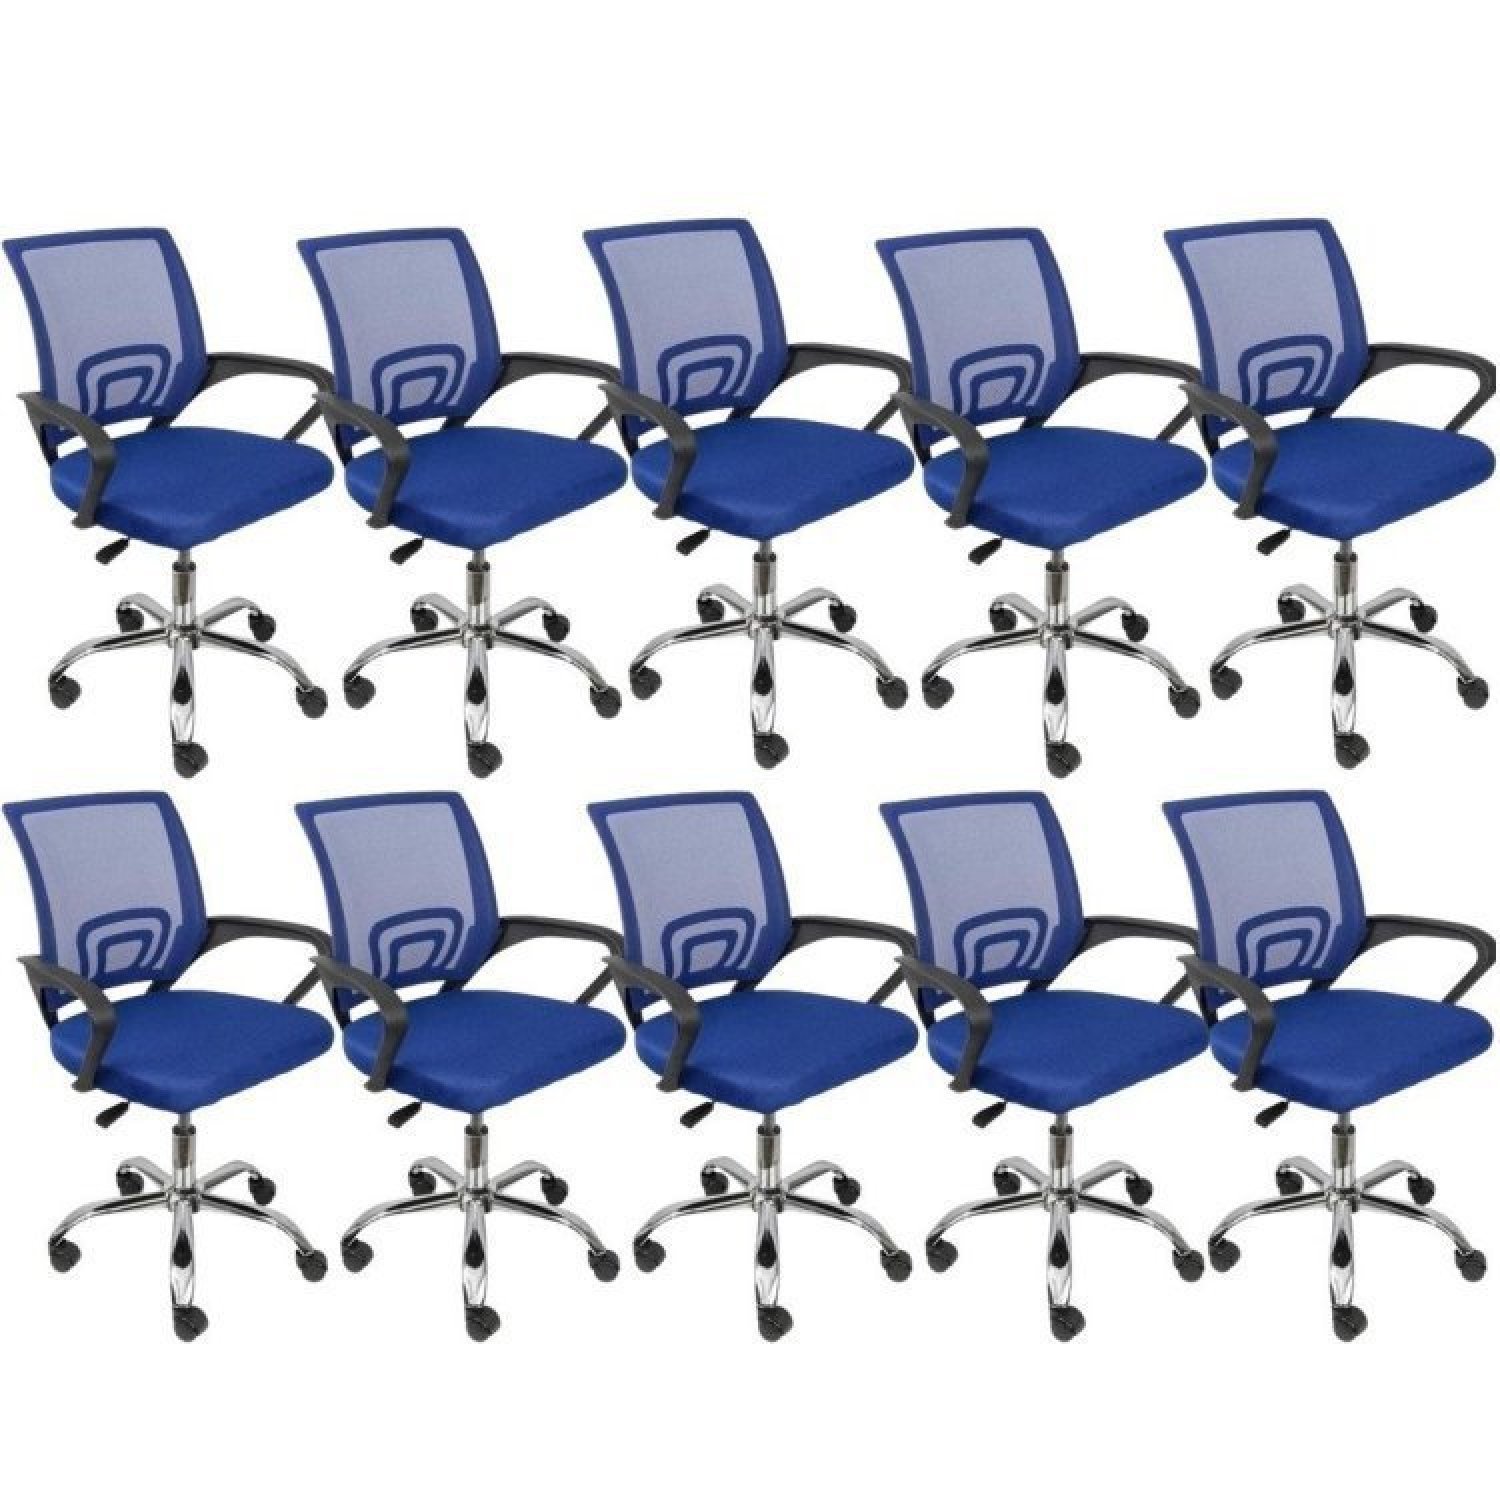 Kit 10 Cadeiras para Escritório Diretor Tela Mesh Tok 3310 OR Design - 1